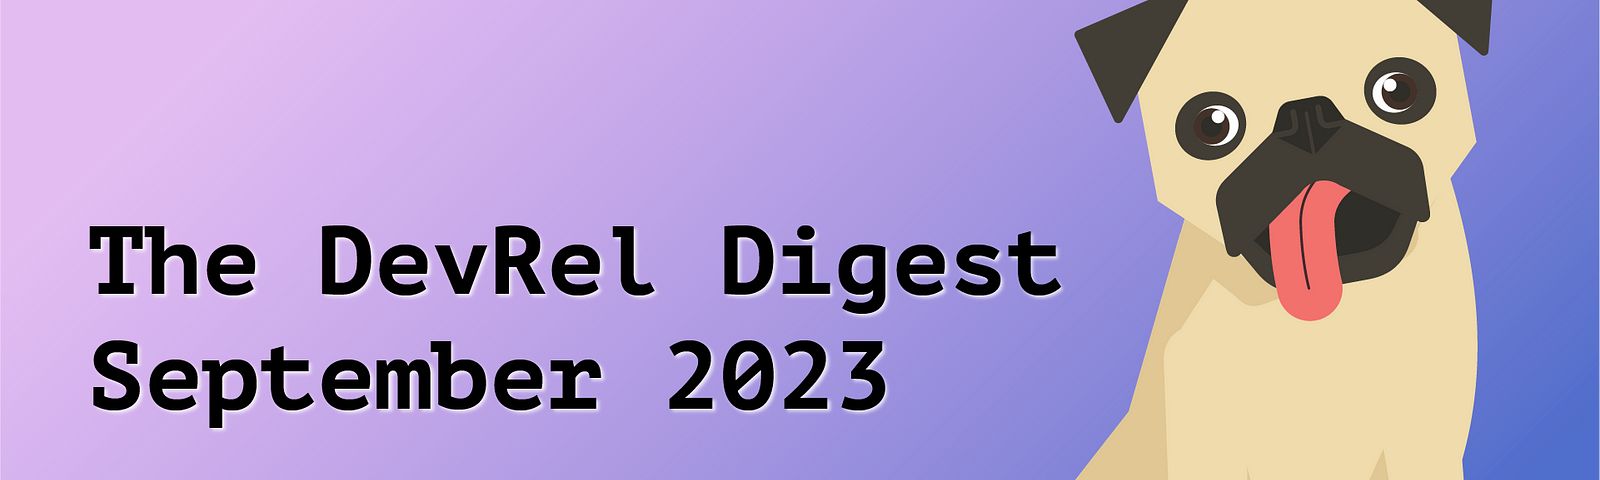 DevRel Digest September 2023